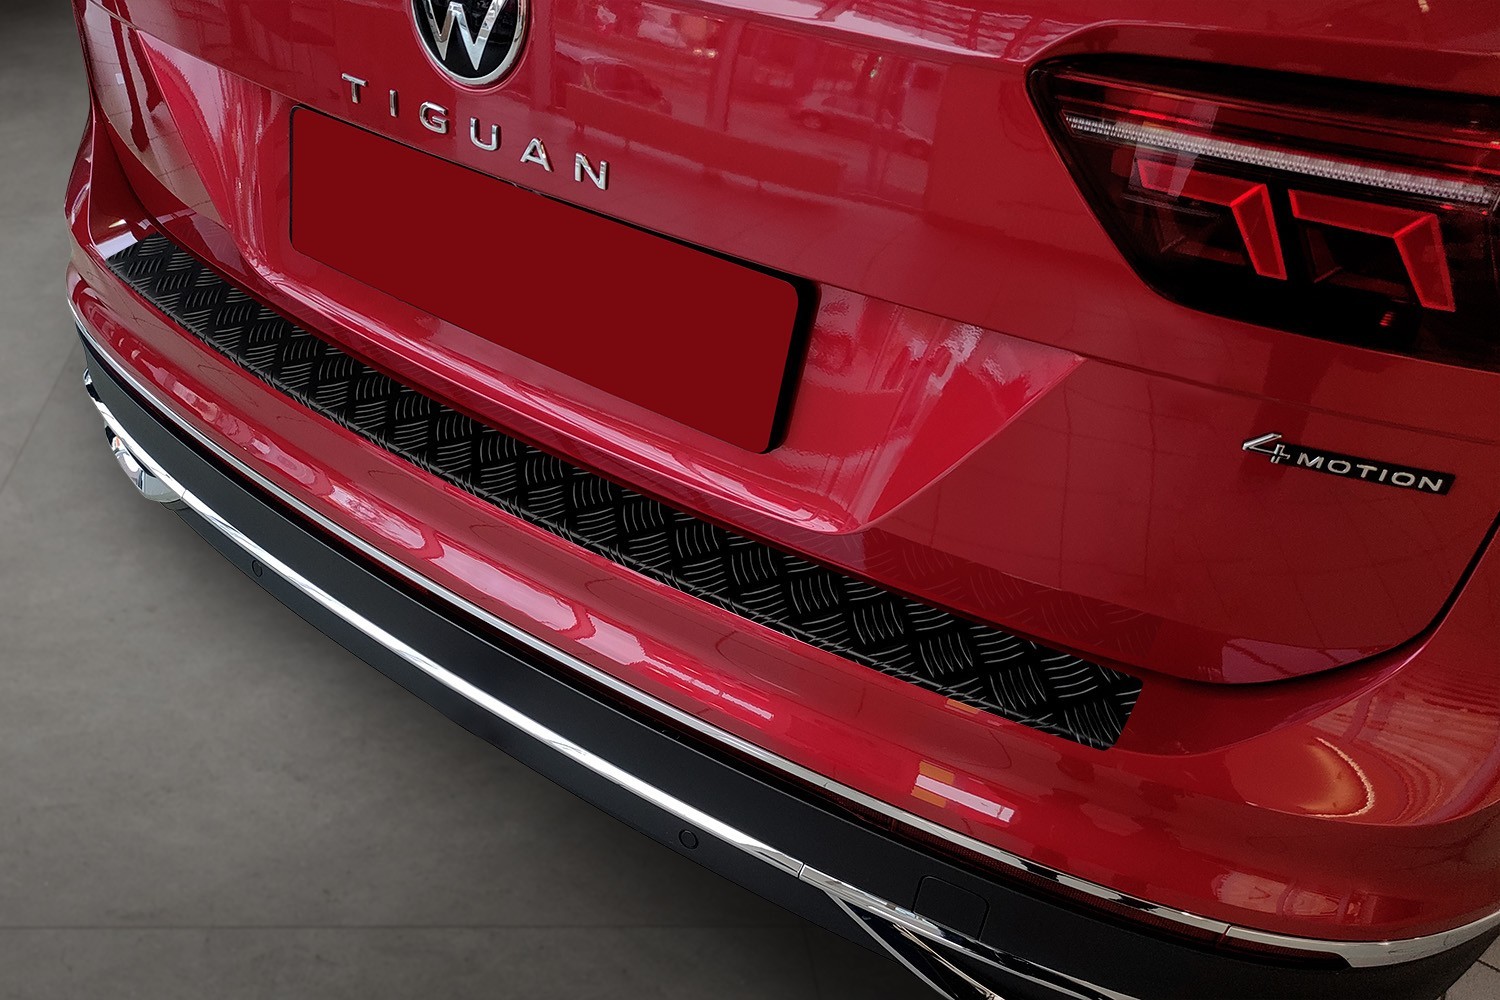 Ladekantenschutz Volkswagen Tiguan II Edelstahl - Carbon Folie